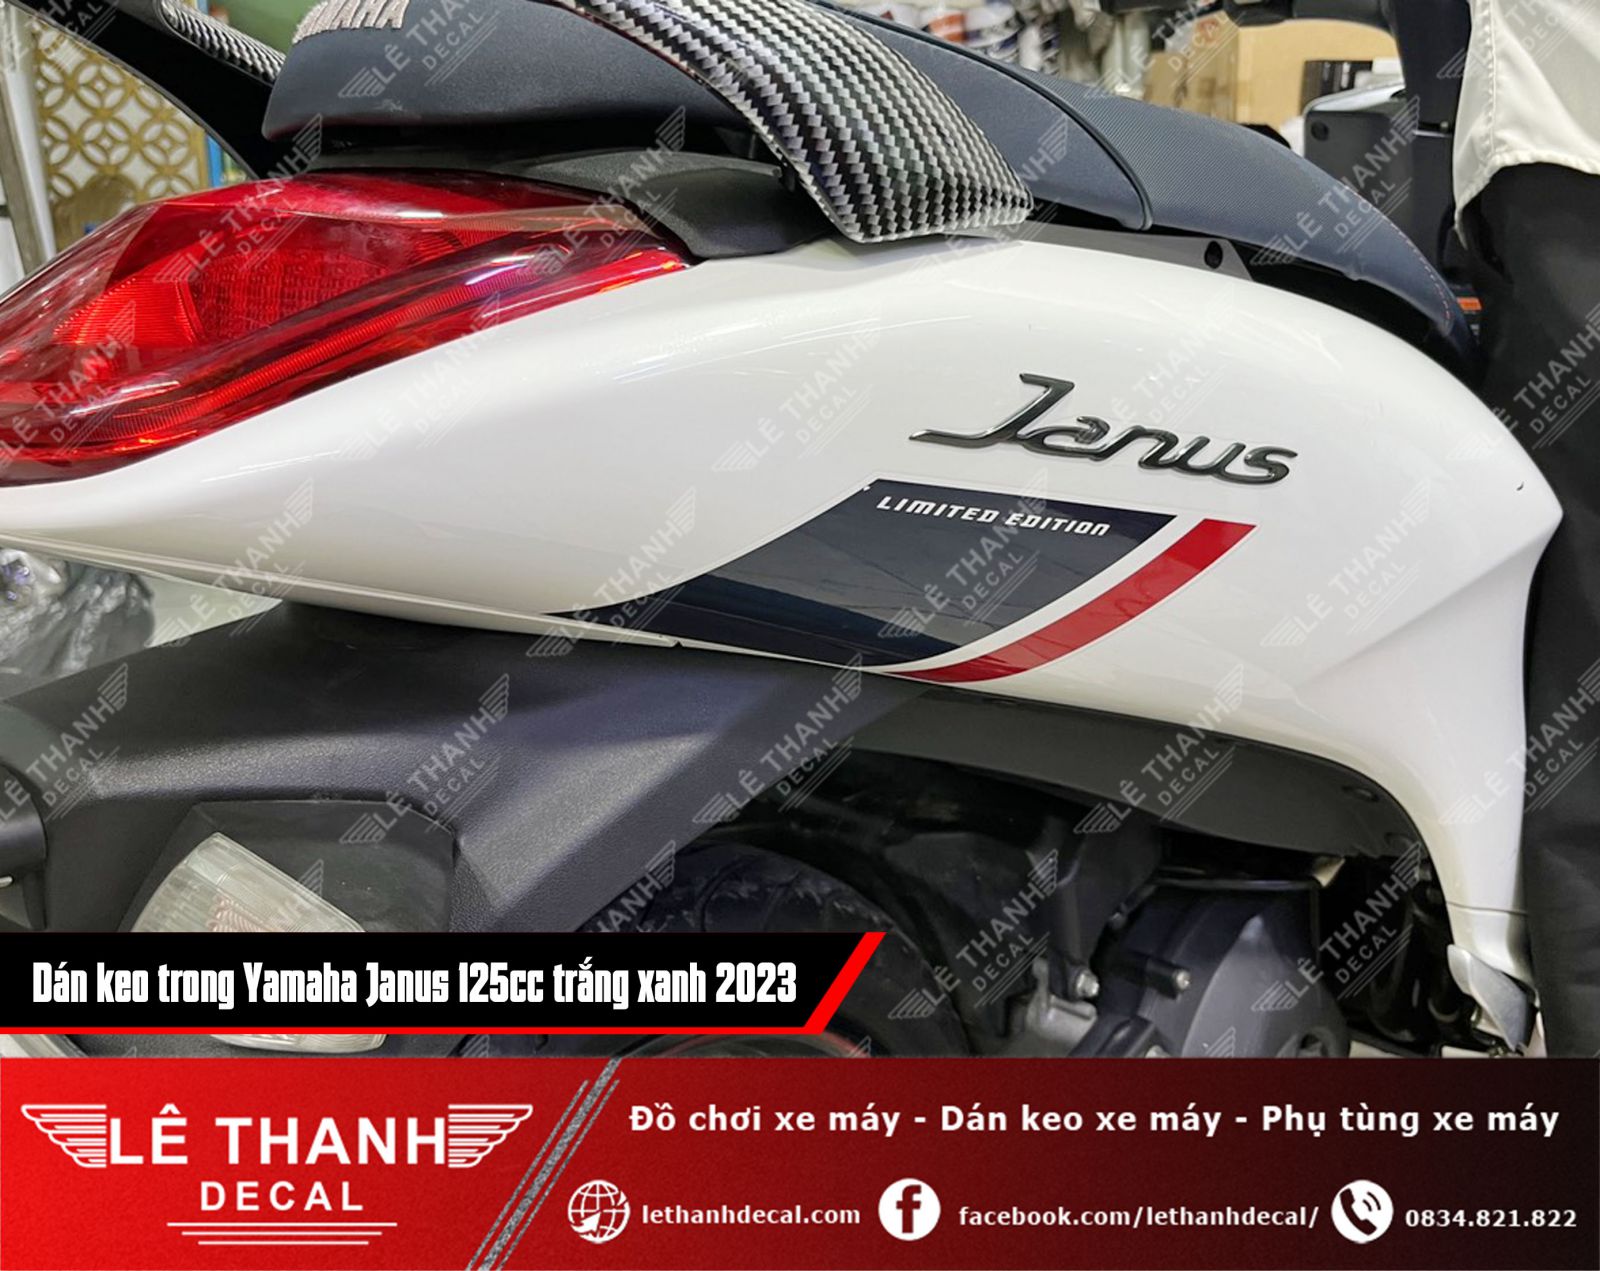 Dán keo trong cho xe Yamaha Janus 125cc trắng xanh 2023 